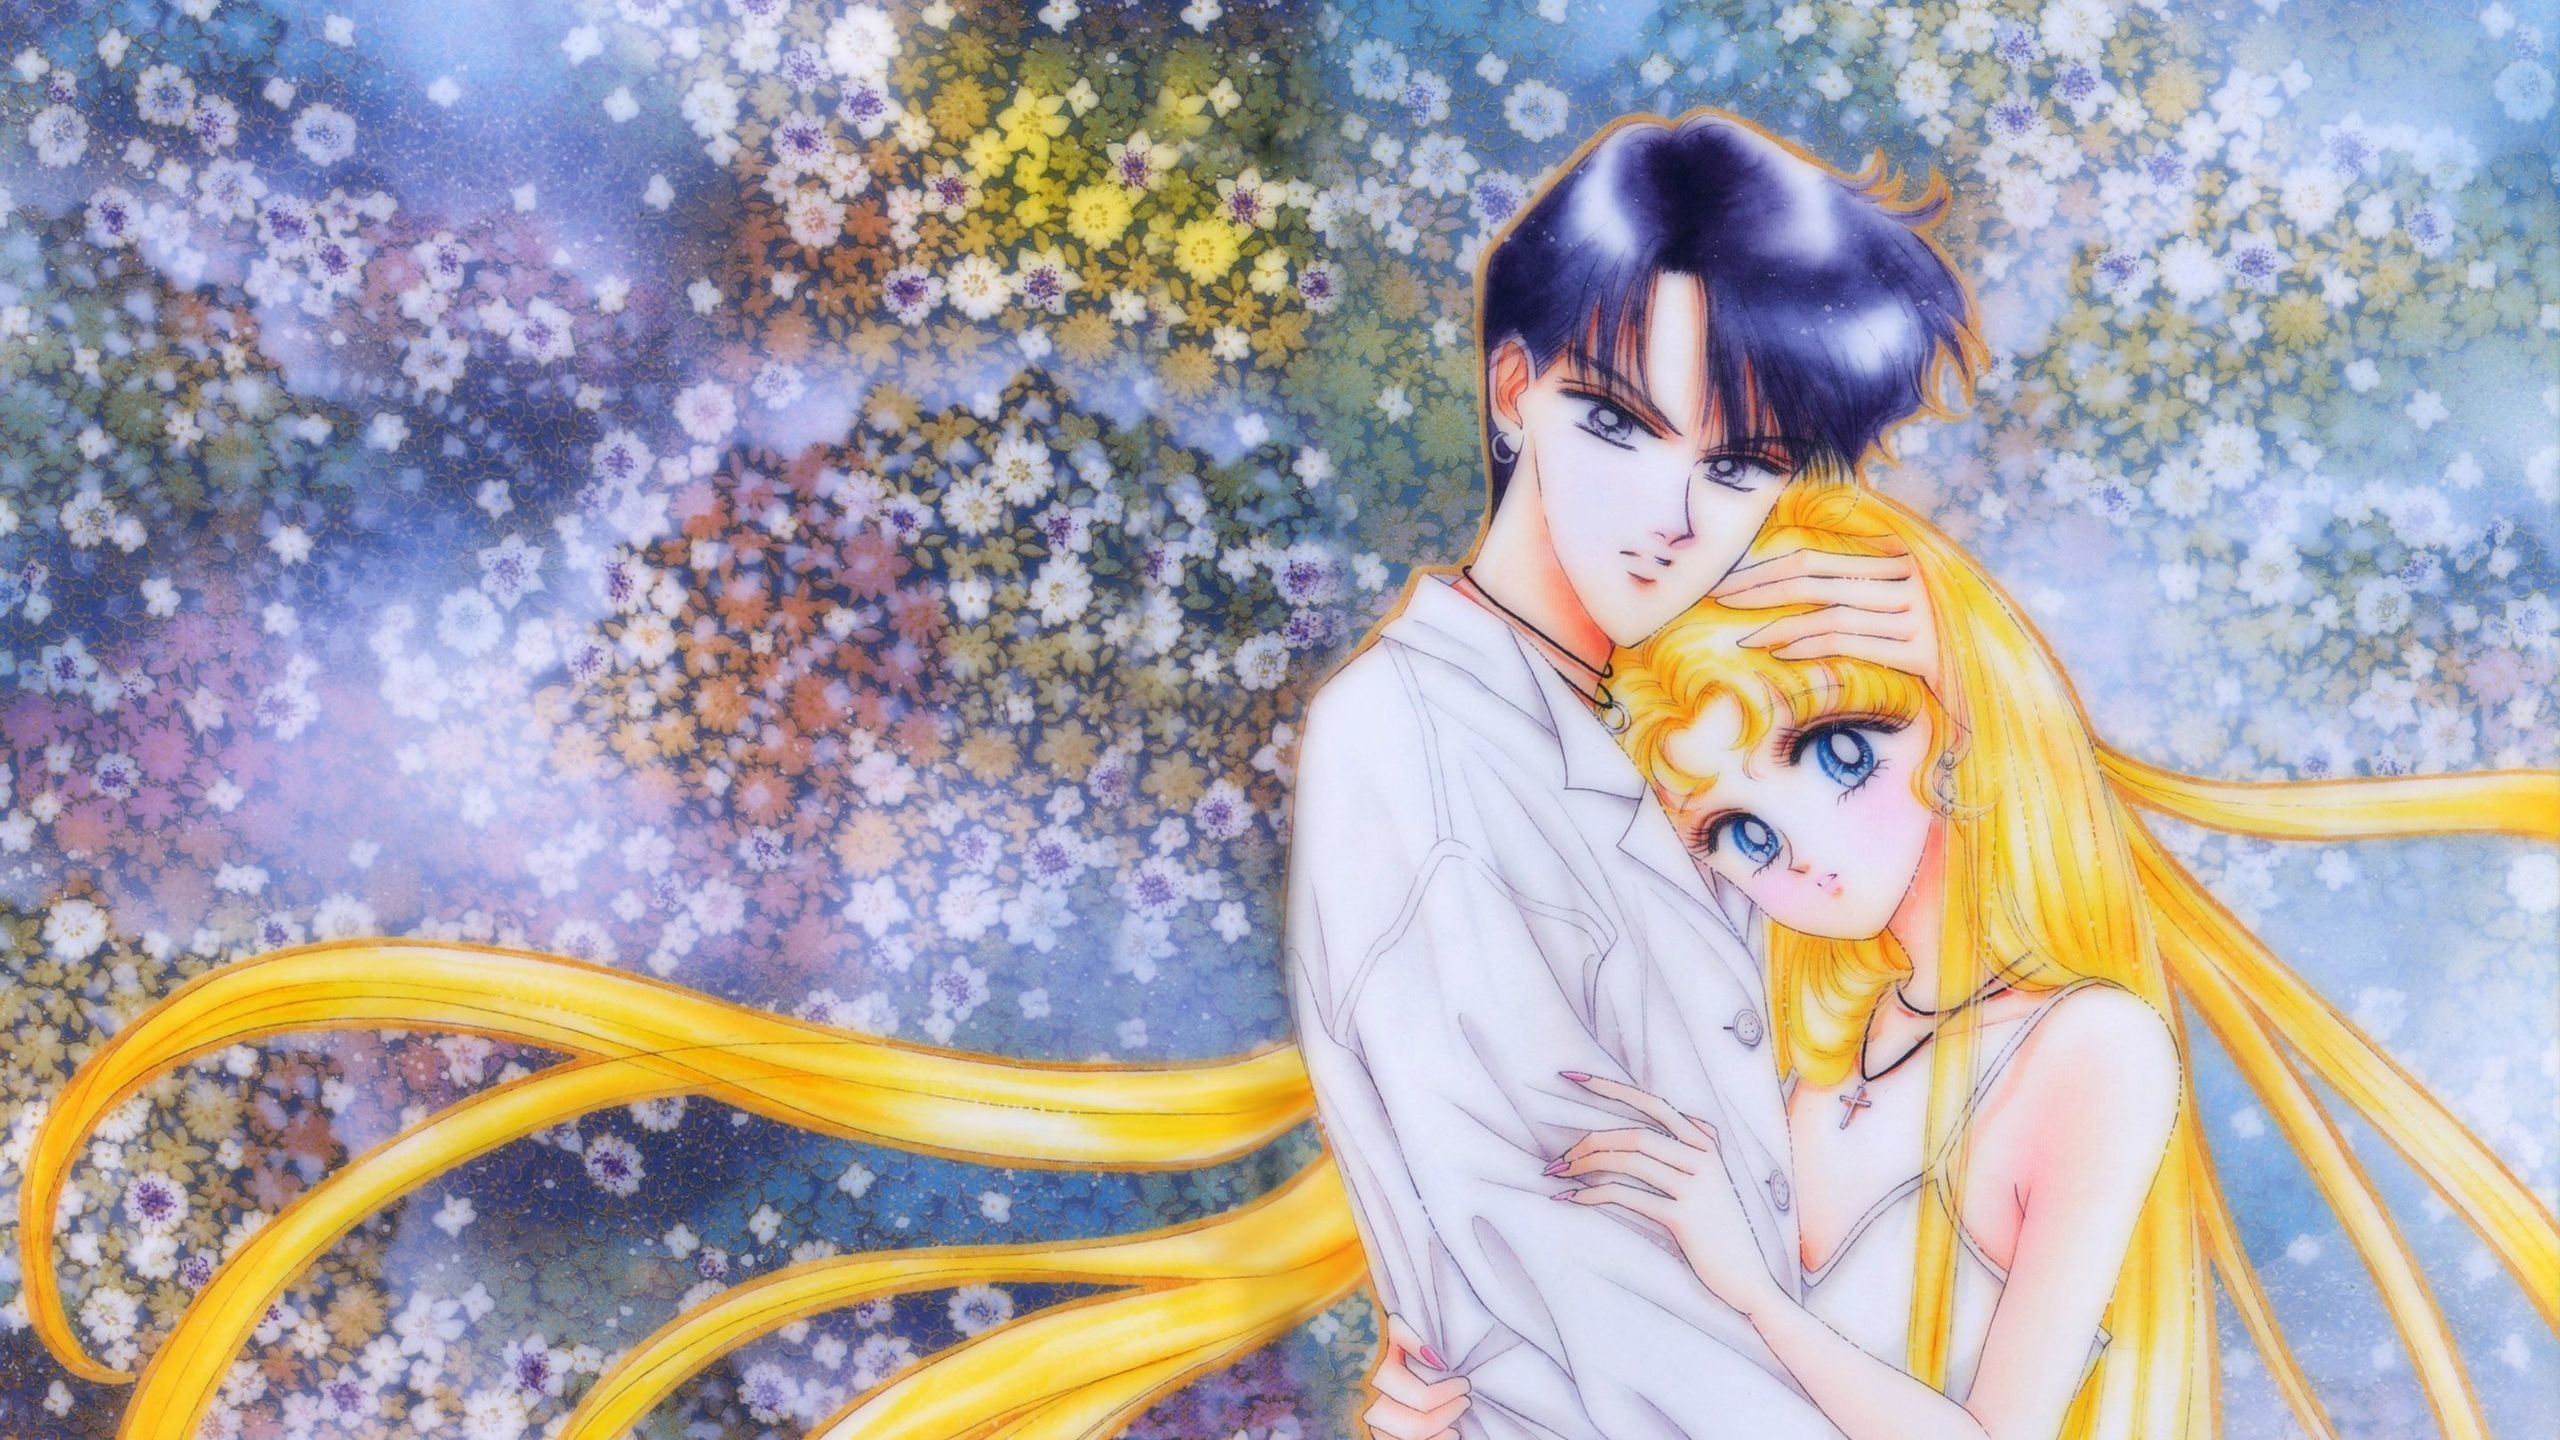 Sailor Moon HD Wallpaper 1920×1080 Sailor Moon HD Wallpaper 1920×1200 Sailor Moon HD Wallpaper Sailor